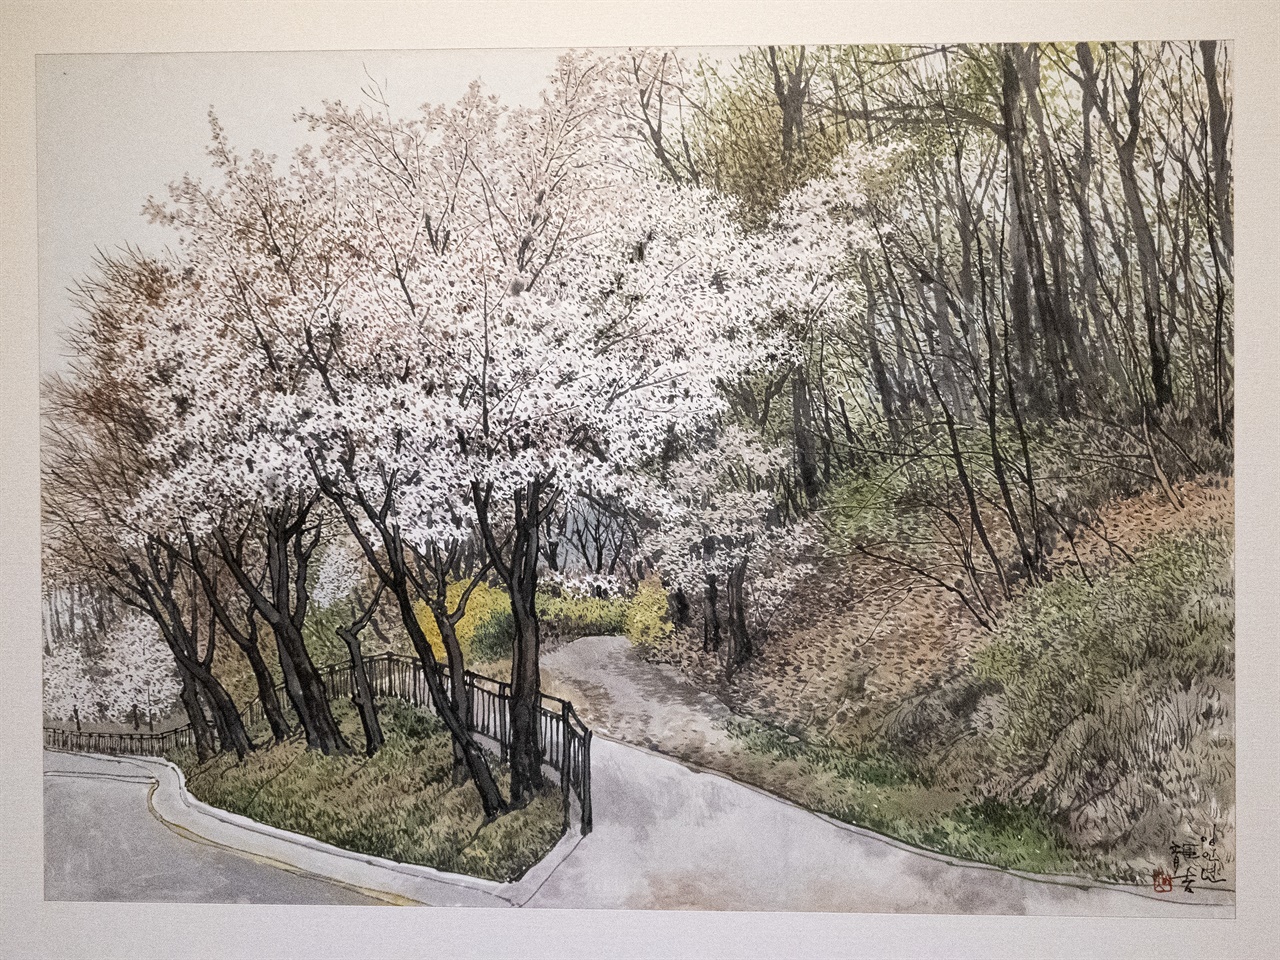 봄의 기운이라는 제목에 우진이네 가는 길이라는 부제가 붙은 작품이다. 벚꽃이 흐드러진 골목길이 설레이는 만남을 이야기한다.